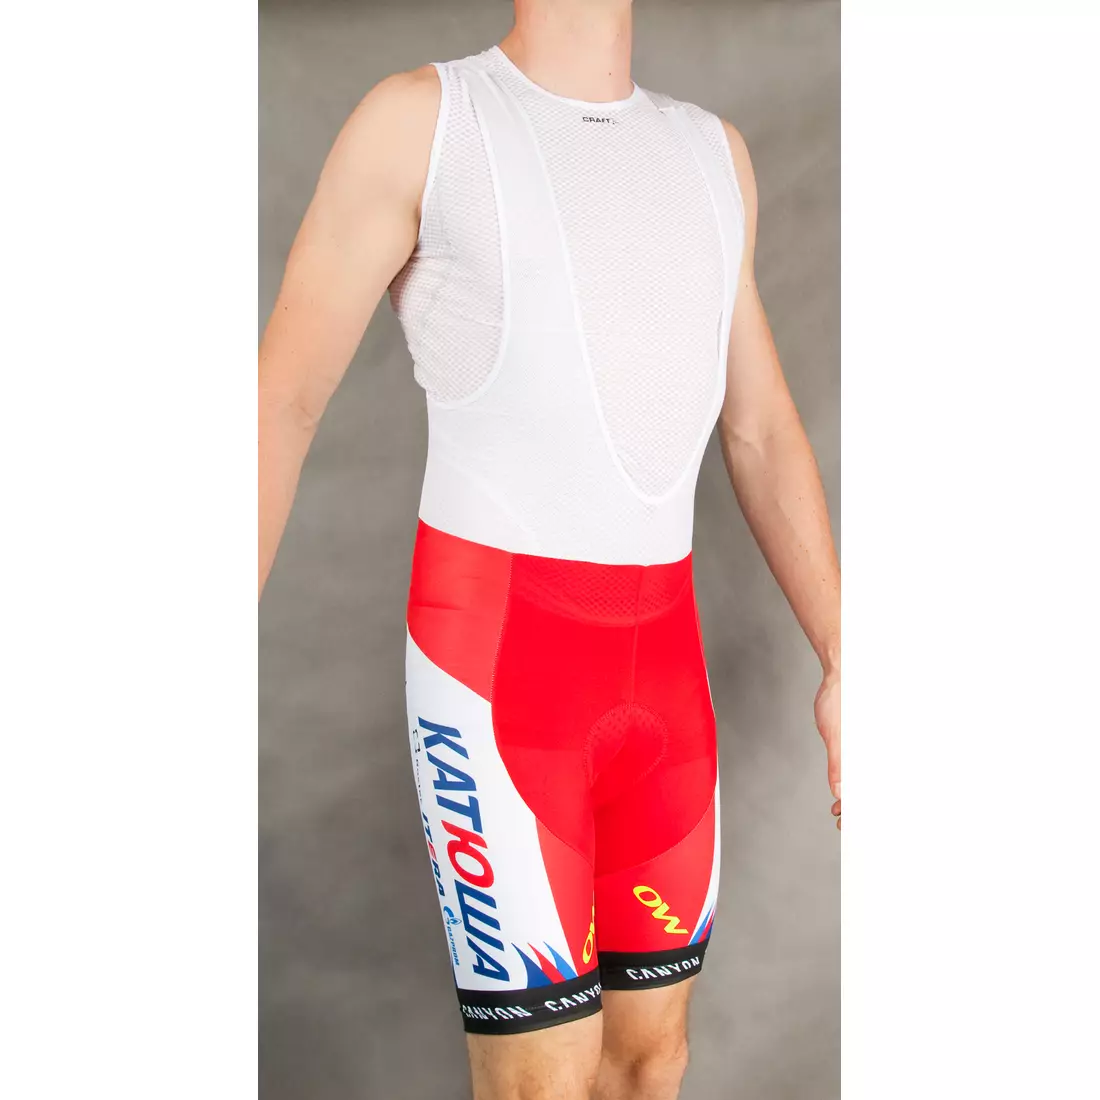 KATUSHA 2015 cycling shorts